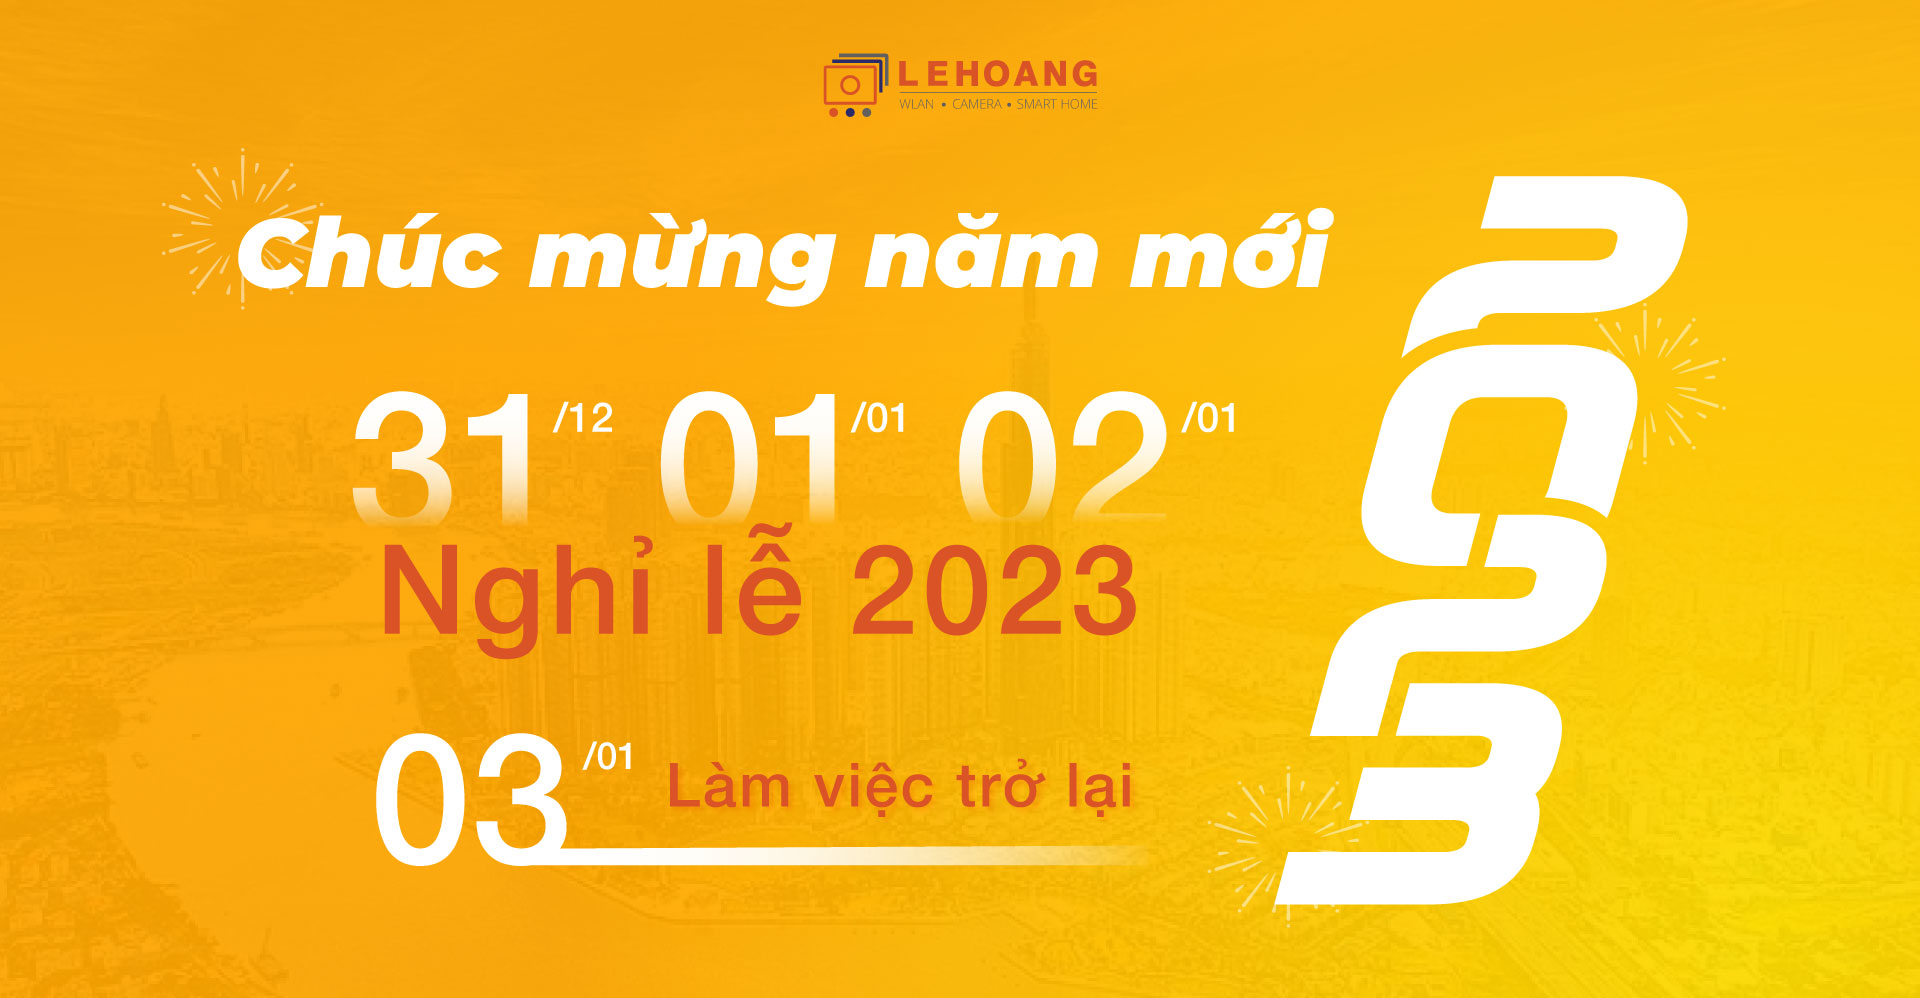 thong-bao-nghi-le-tet-duong-2023-le-hoang